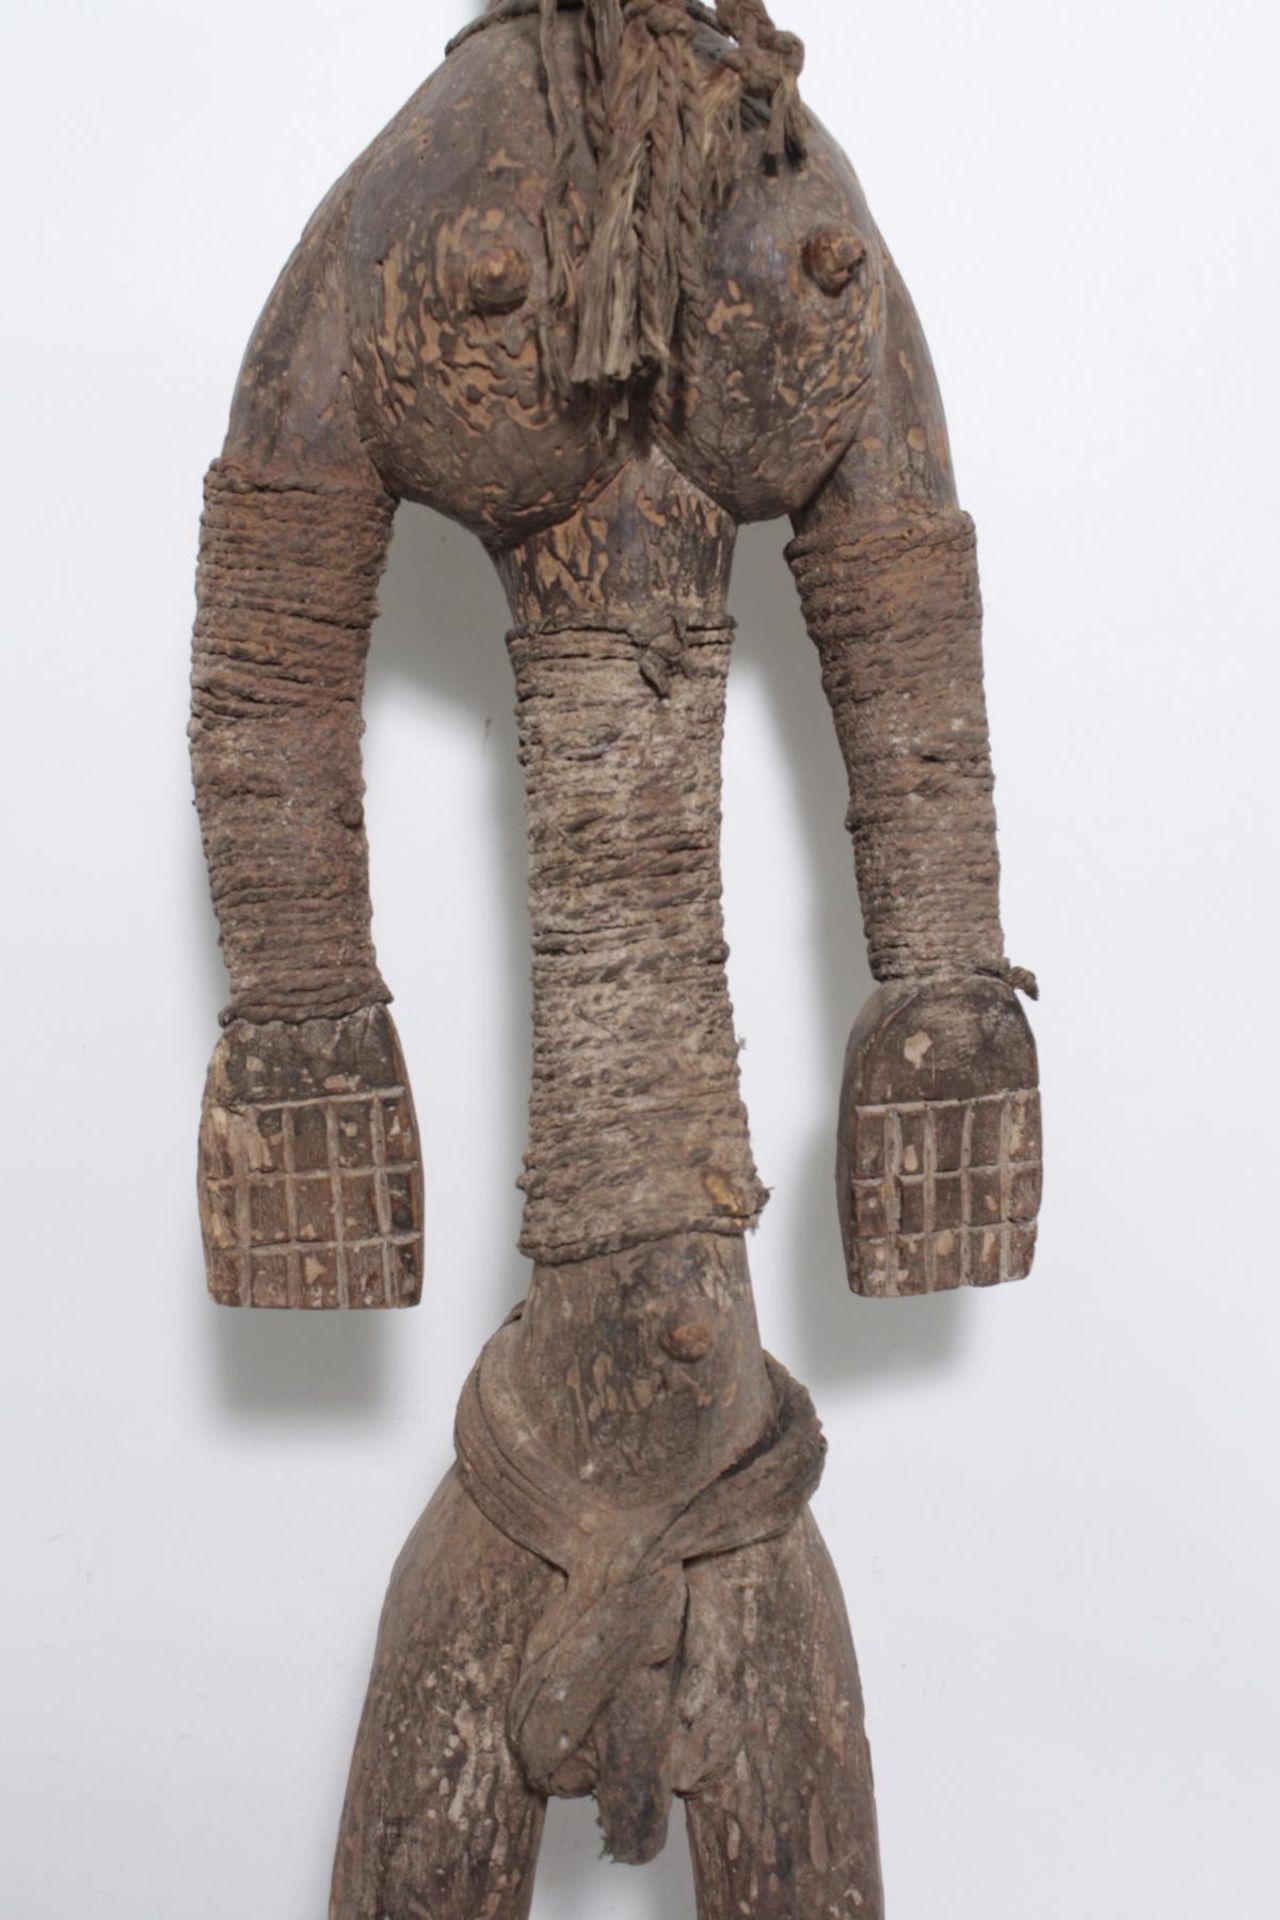 Ältere Große Figur, Dogon oder Bambara, MaliHolz, matte Krusten Patina, stehender Figur mit hohem - Bild 3 aus 16